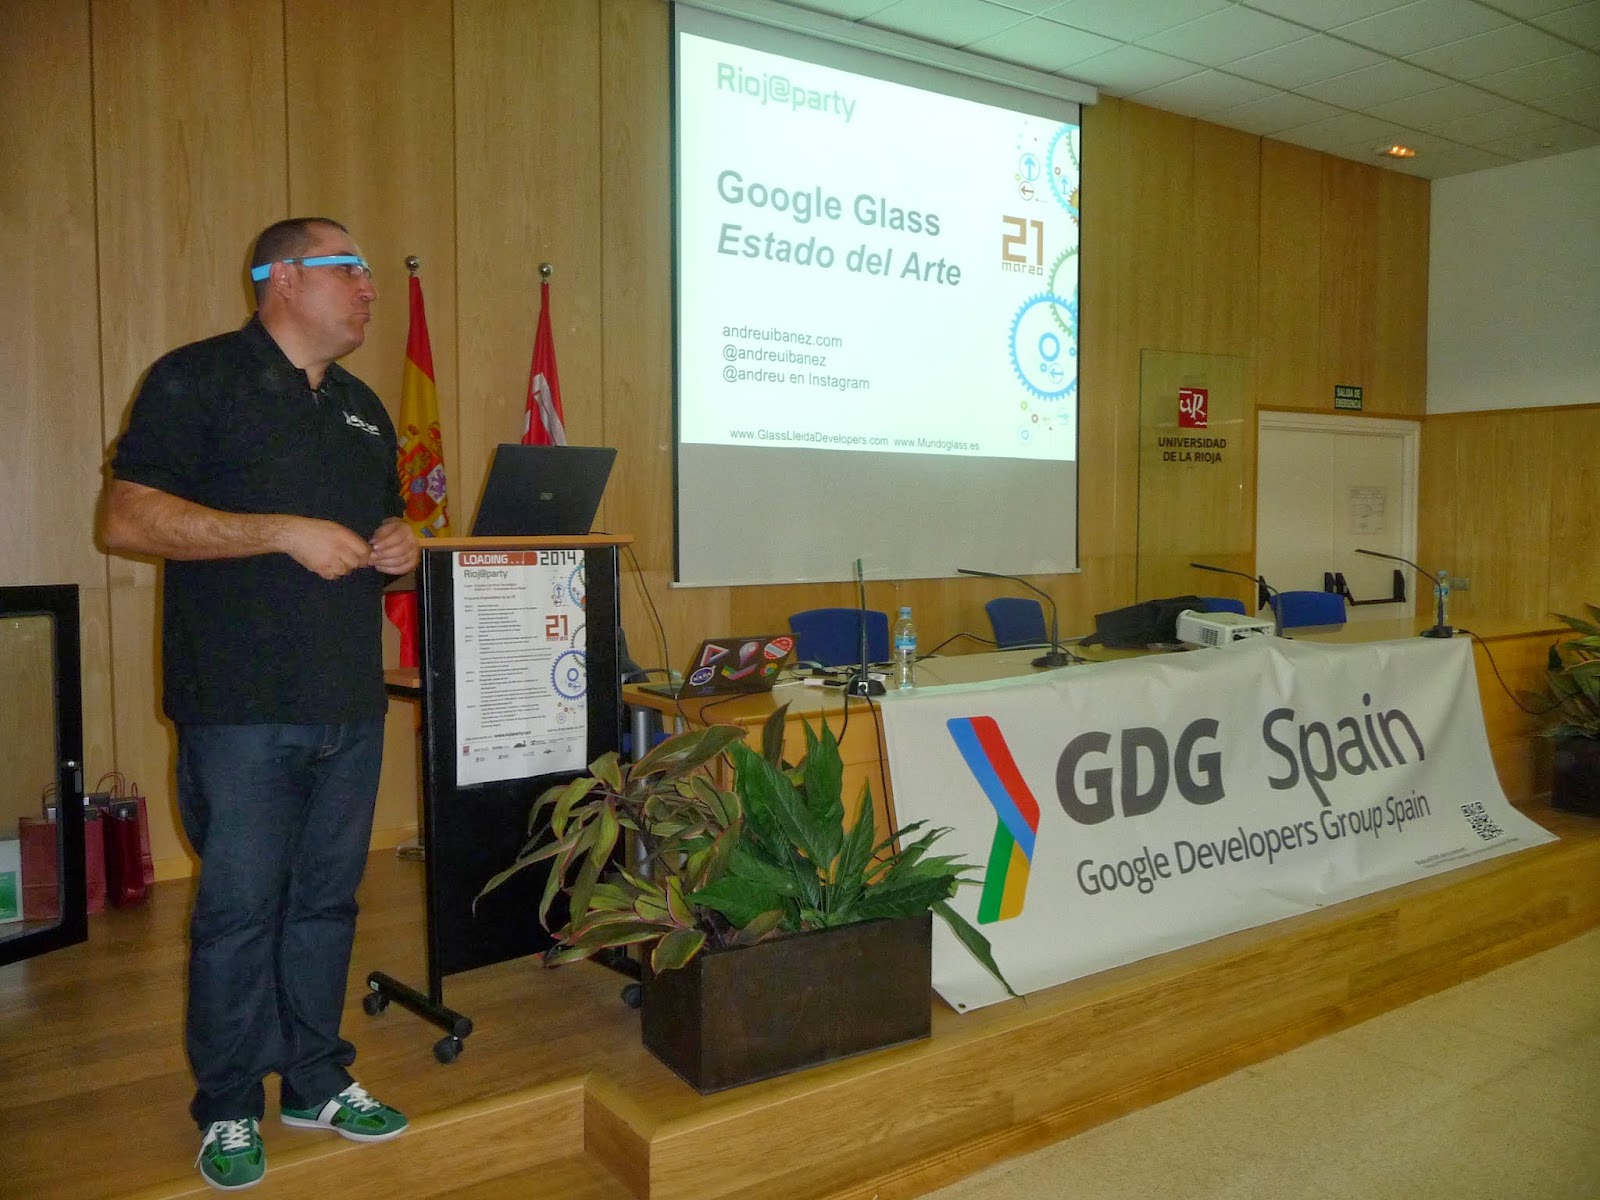 Gran jornada en Logroño sobre #GoogleGlass con el @GDGLaRioja @Esaccesibleapp @Mundoglass_es @Mario_Ezquerro @fjridruejo @borjareinares